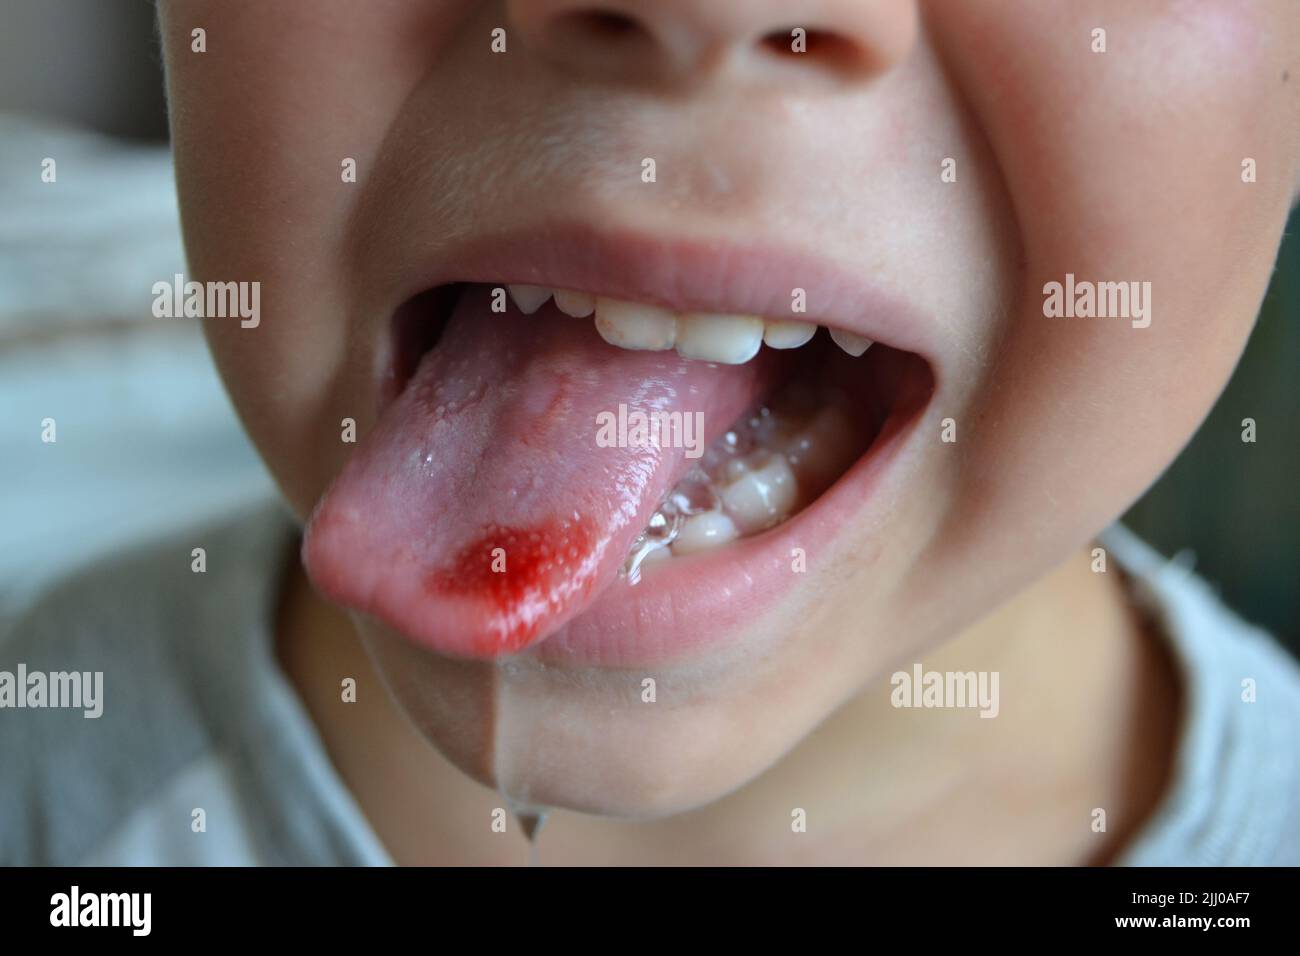 Lingua morso del bambino. Primo piano di labbra, lingua, protrusione di sangue Foto Stock